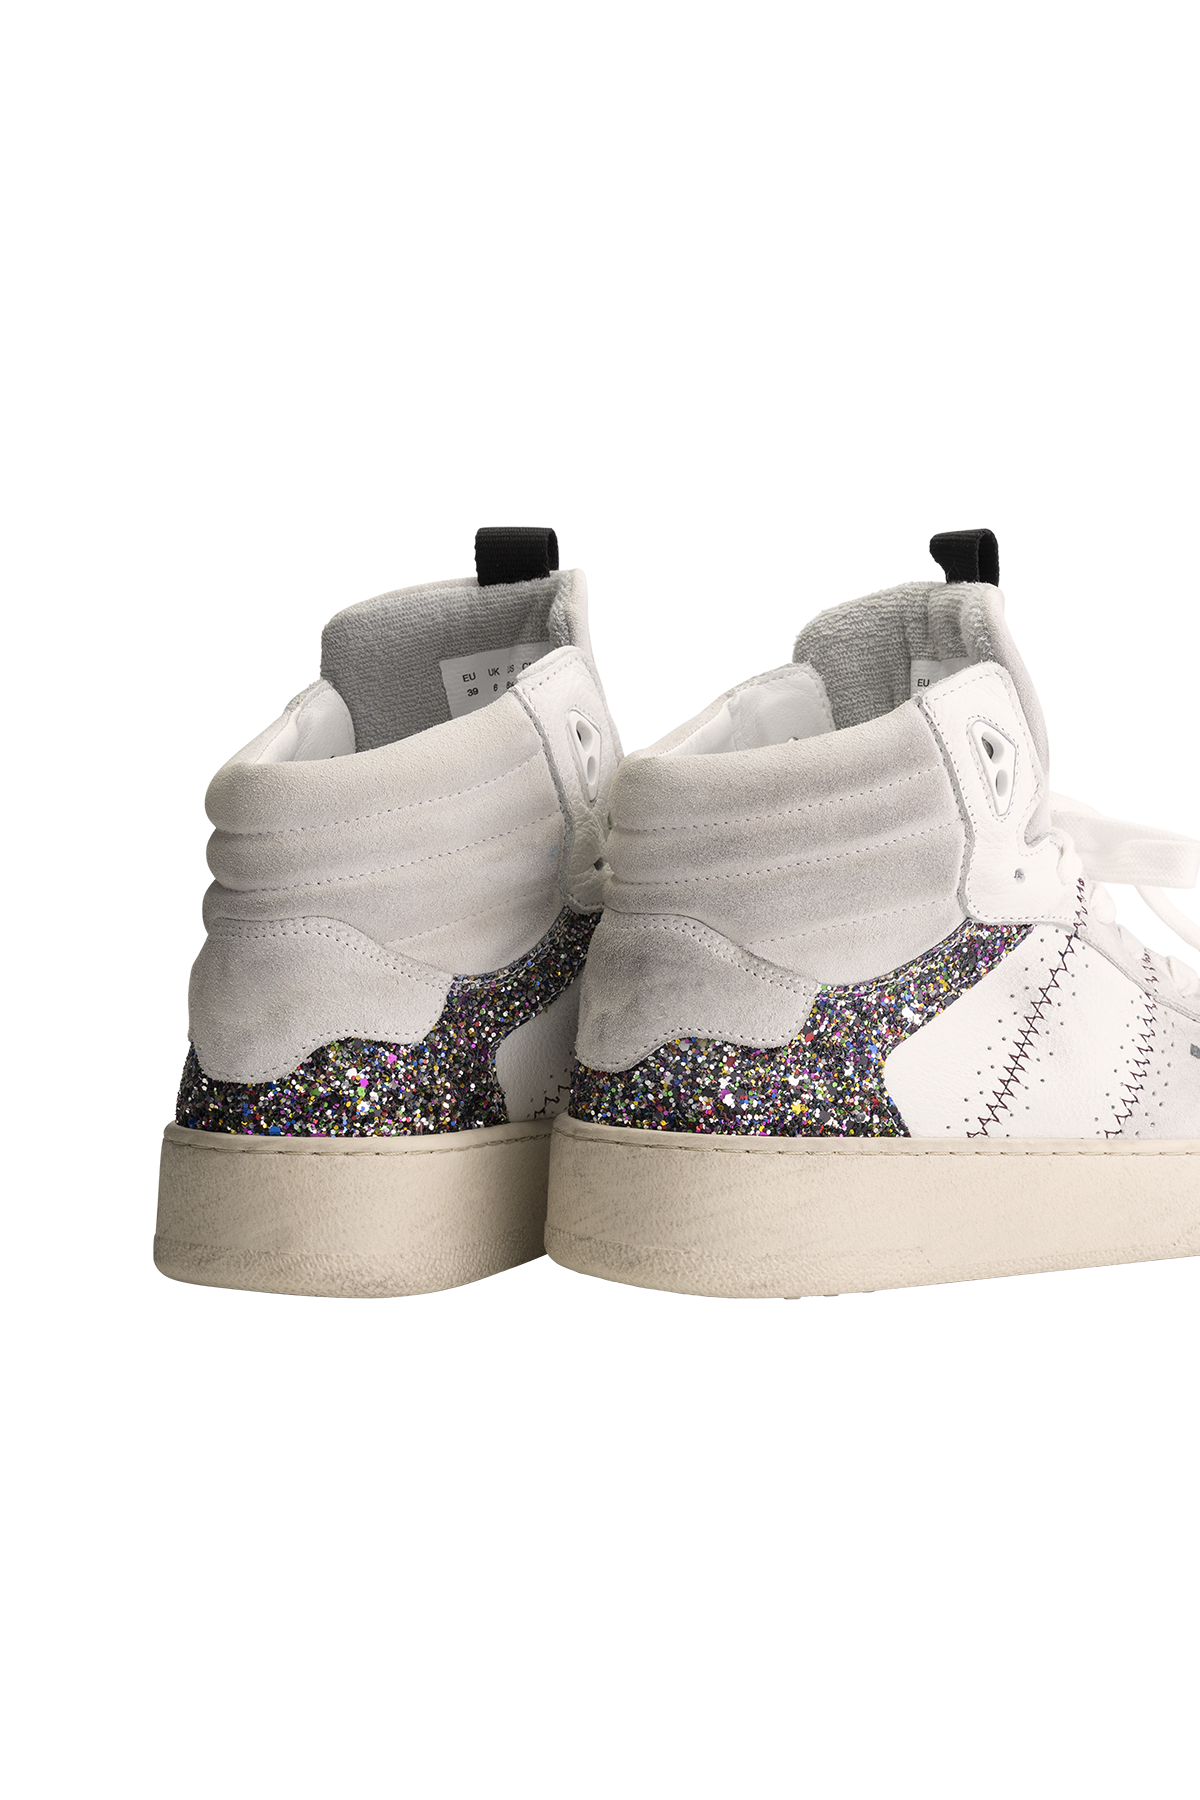 BLAH Jenn Sneaker - White Multi Glitter - RUM Amsterdam